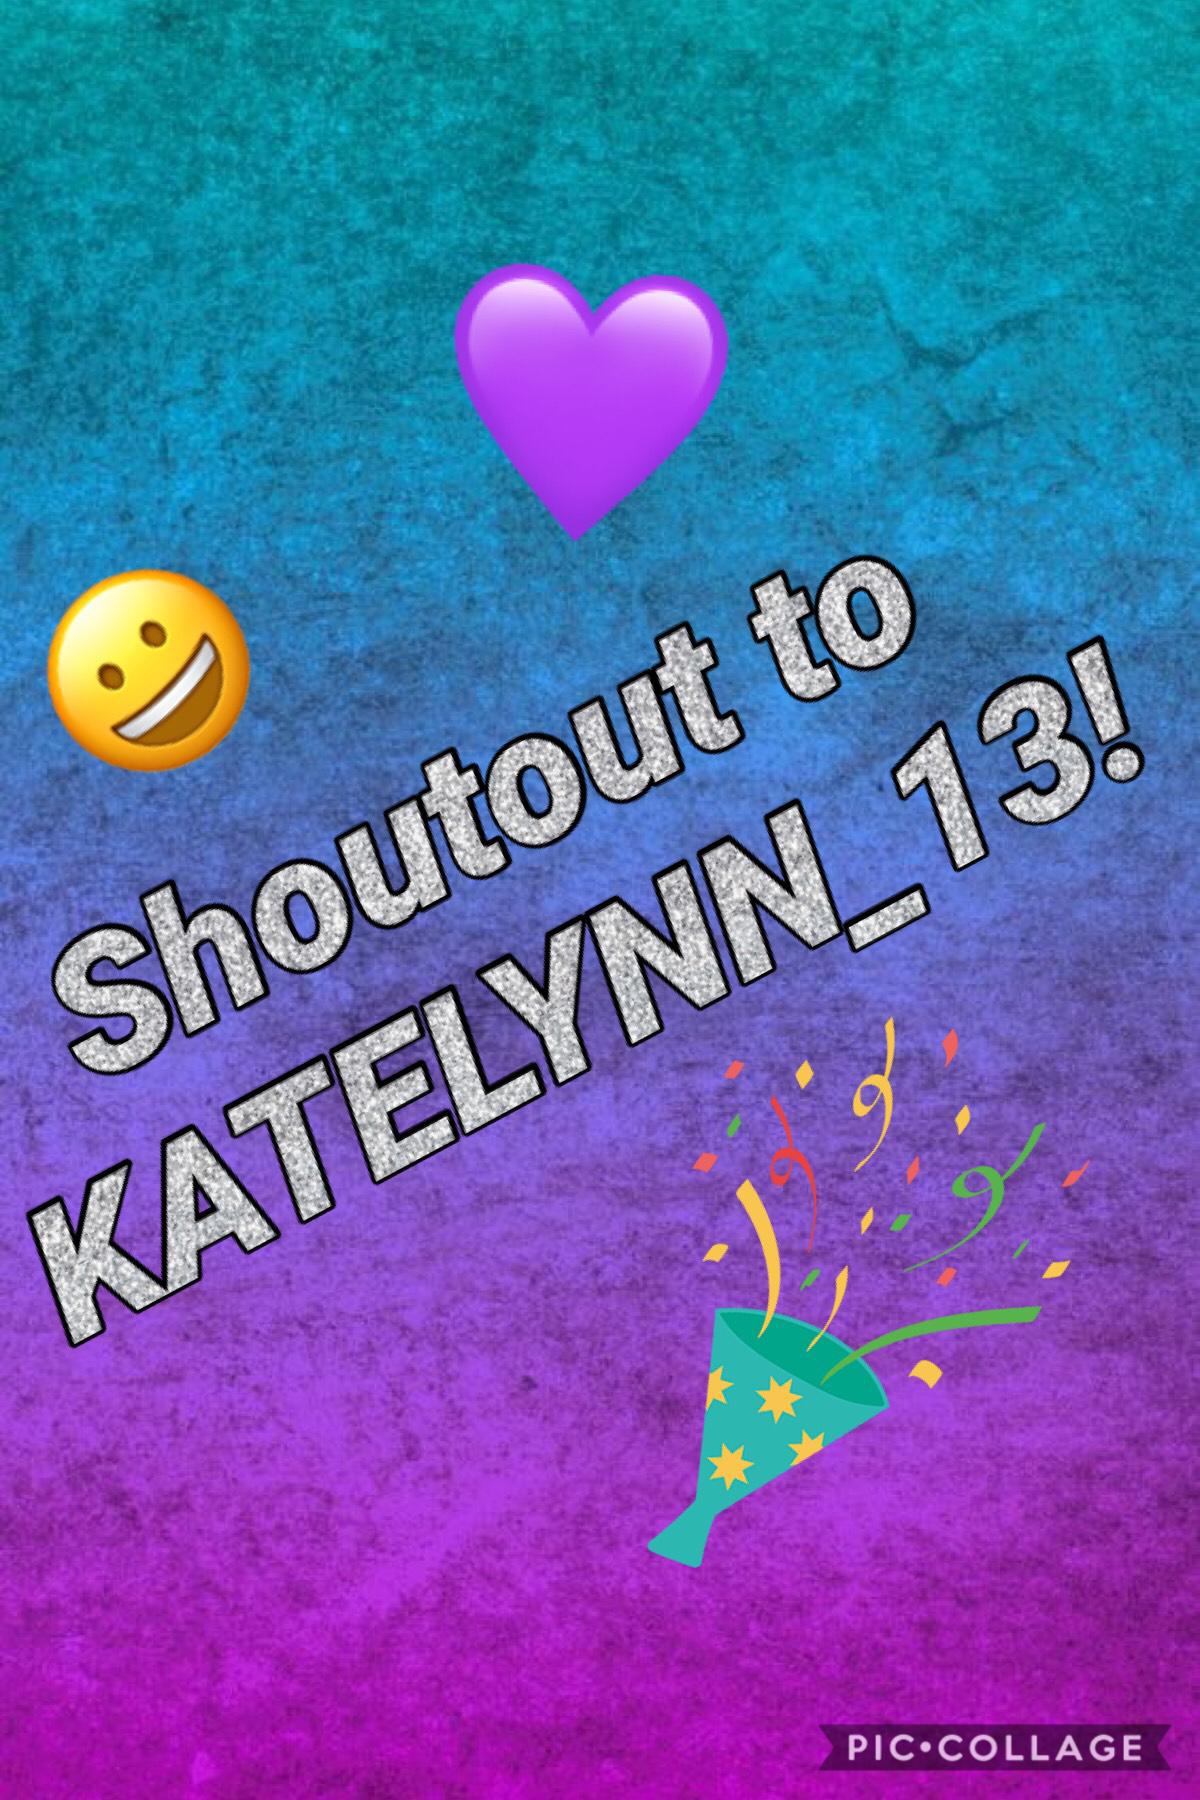 Shoutout to KATELYNN_13!!!
Who else wants a shoutout comment below!!! 💜